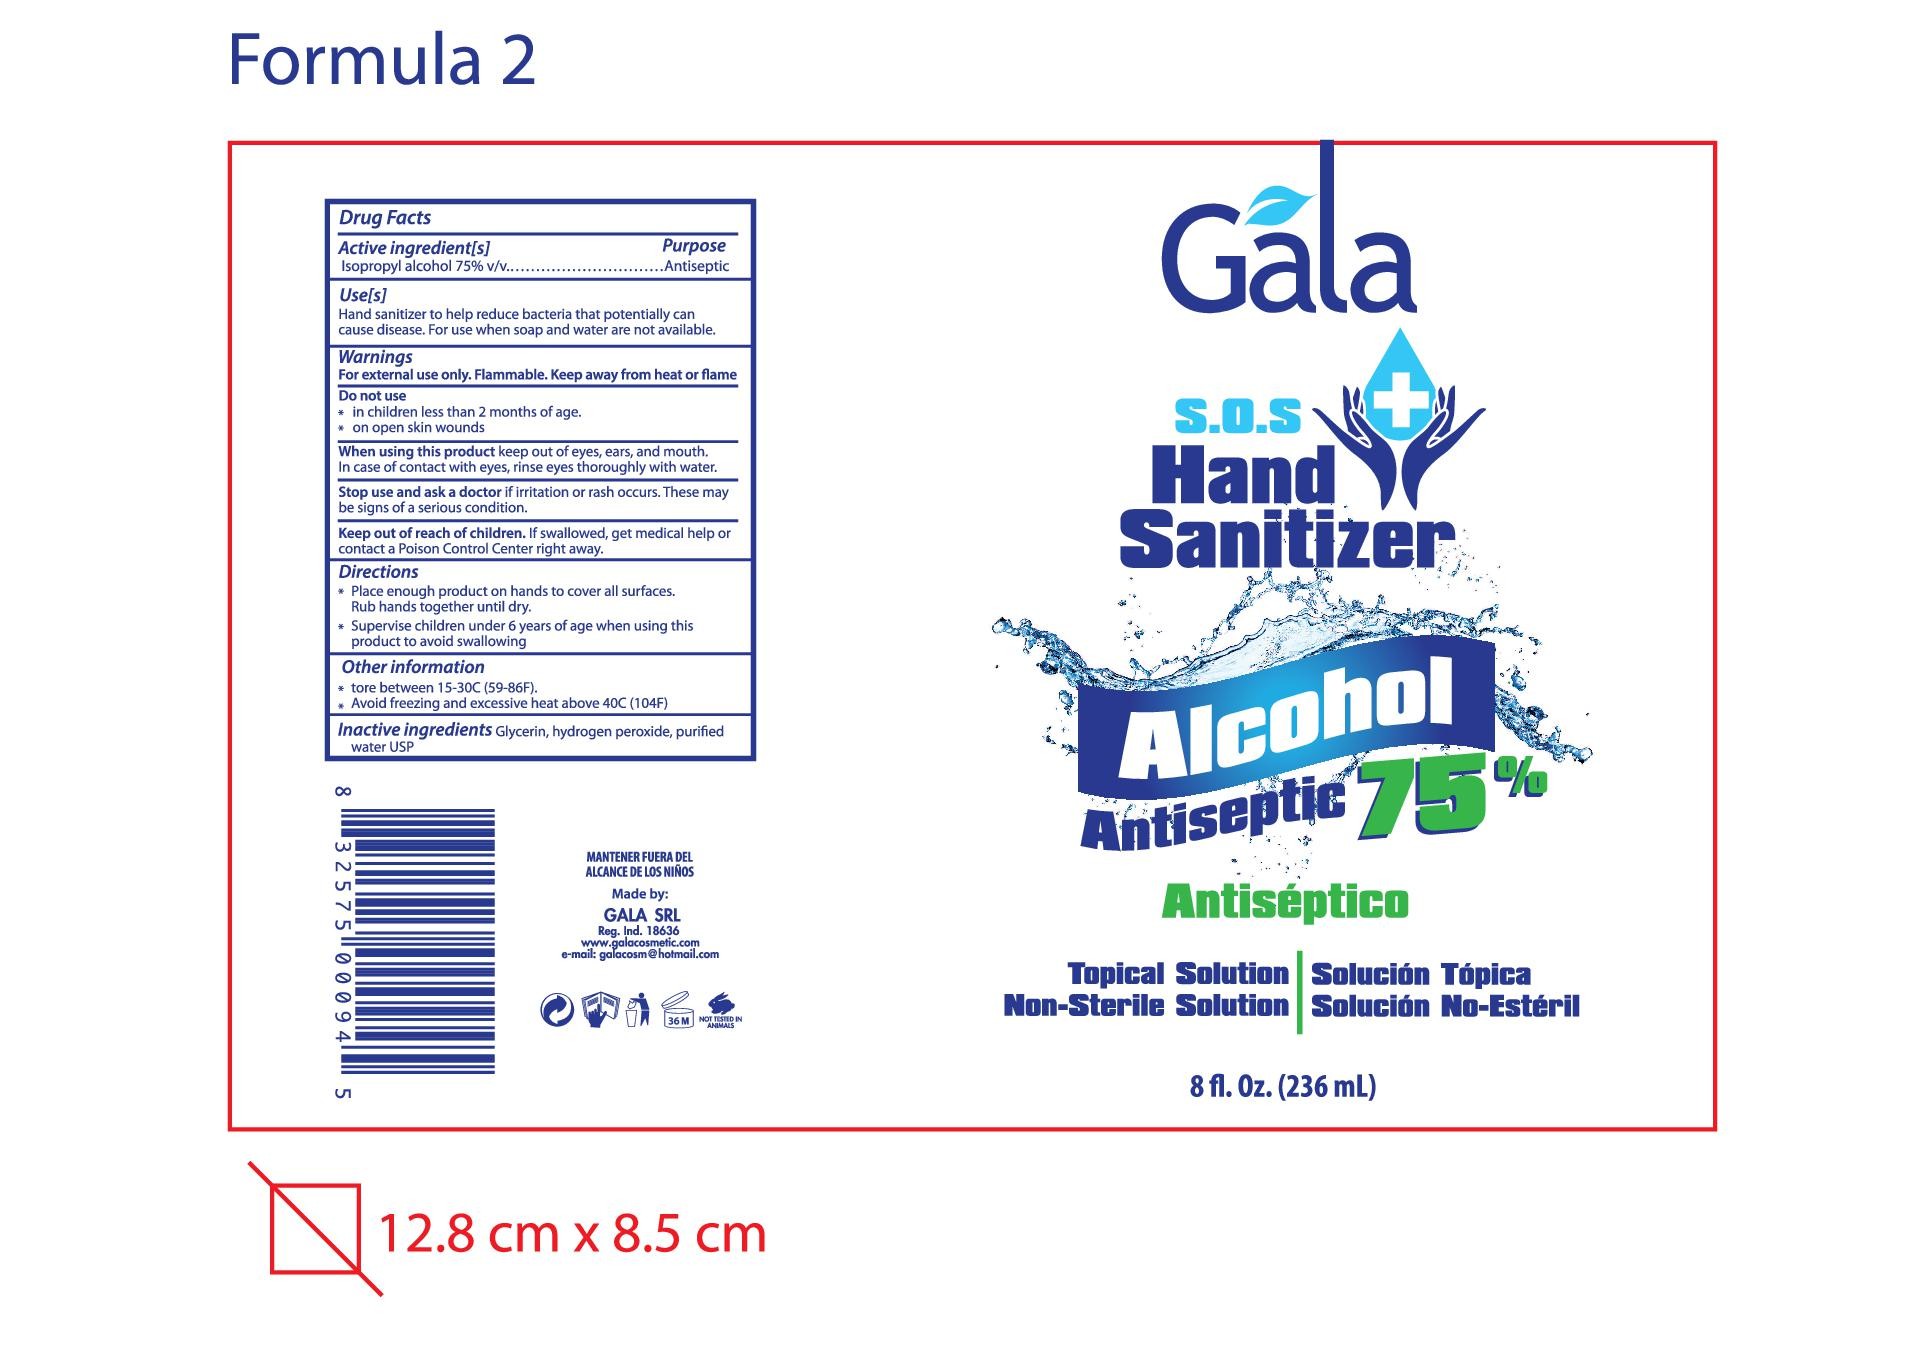 Gala Hand Sanitizer-Alcohol Antiseptic 75%